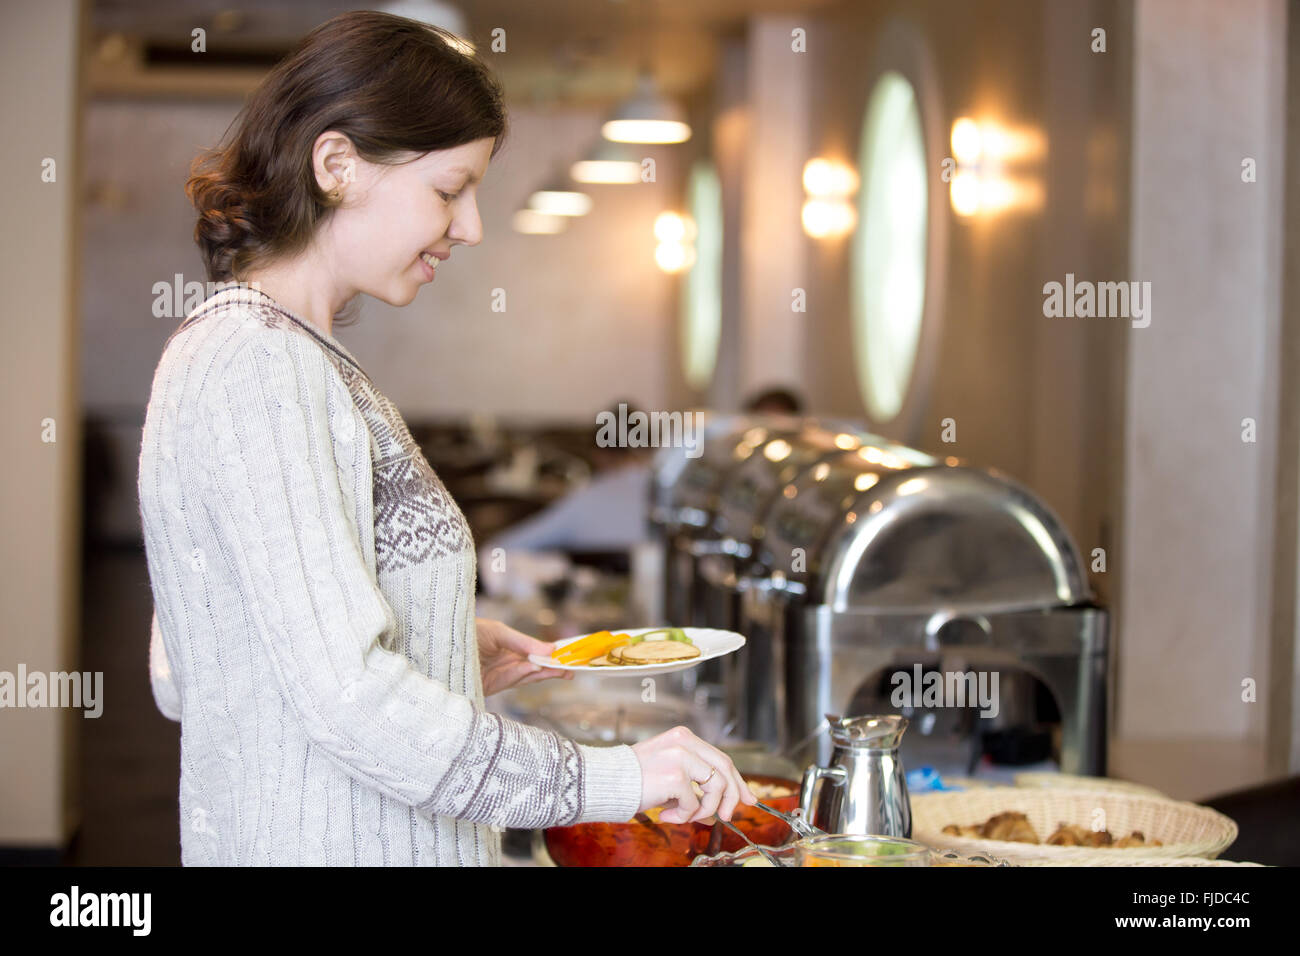 Porträt des jungen glücklich lächelnde Frau bekommen zur Selbstverpflegung Frühstück im Hotelrestaurant Stockfoto